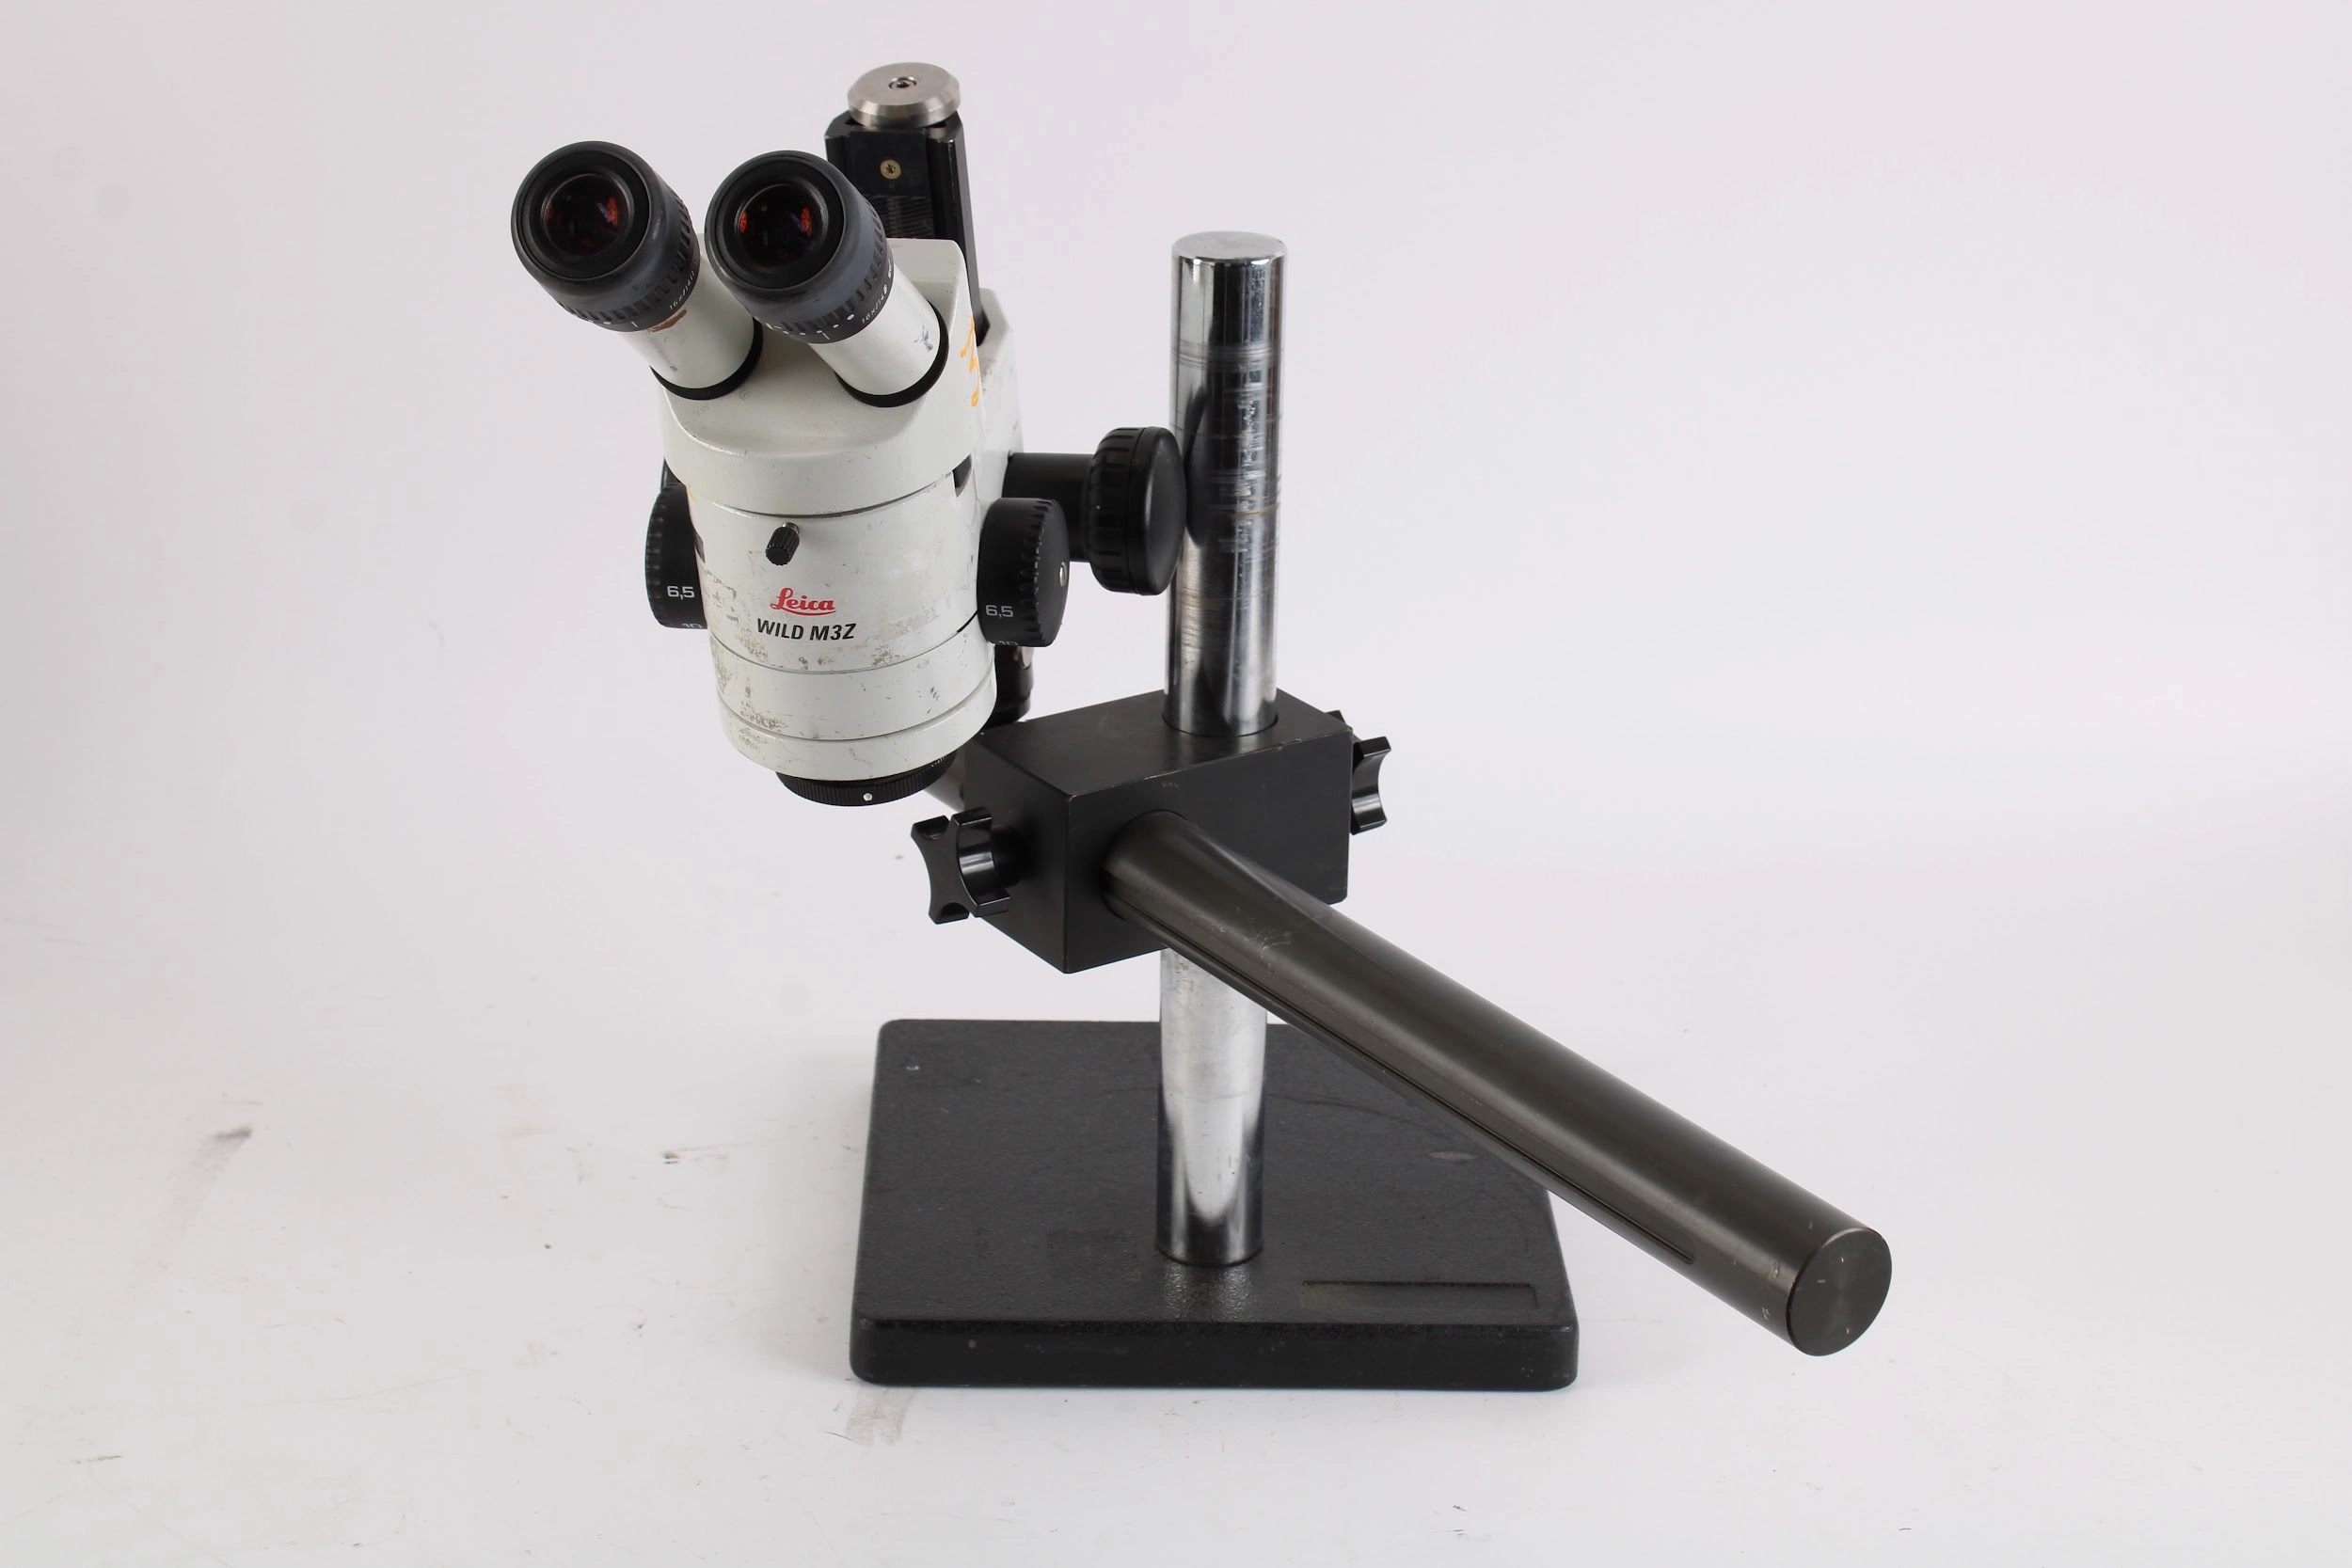 Leica WILD M3Z StereoZoom Microscope w/ Leica 10445301 16x/14b Eye Pieces